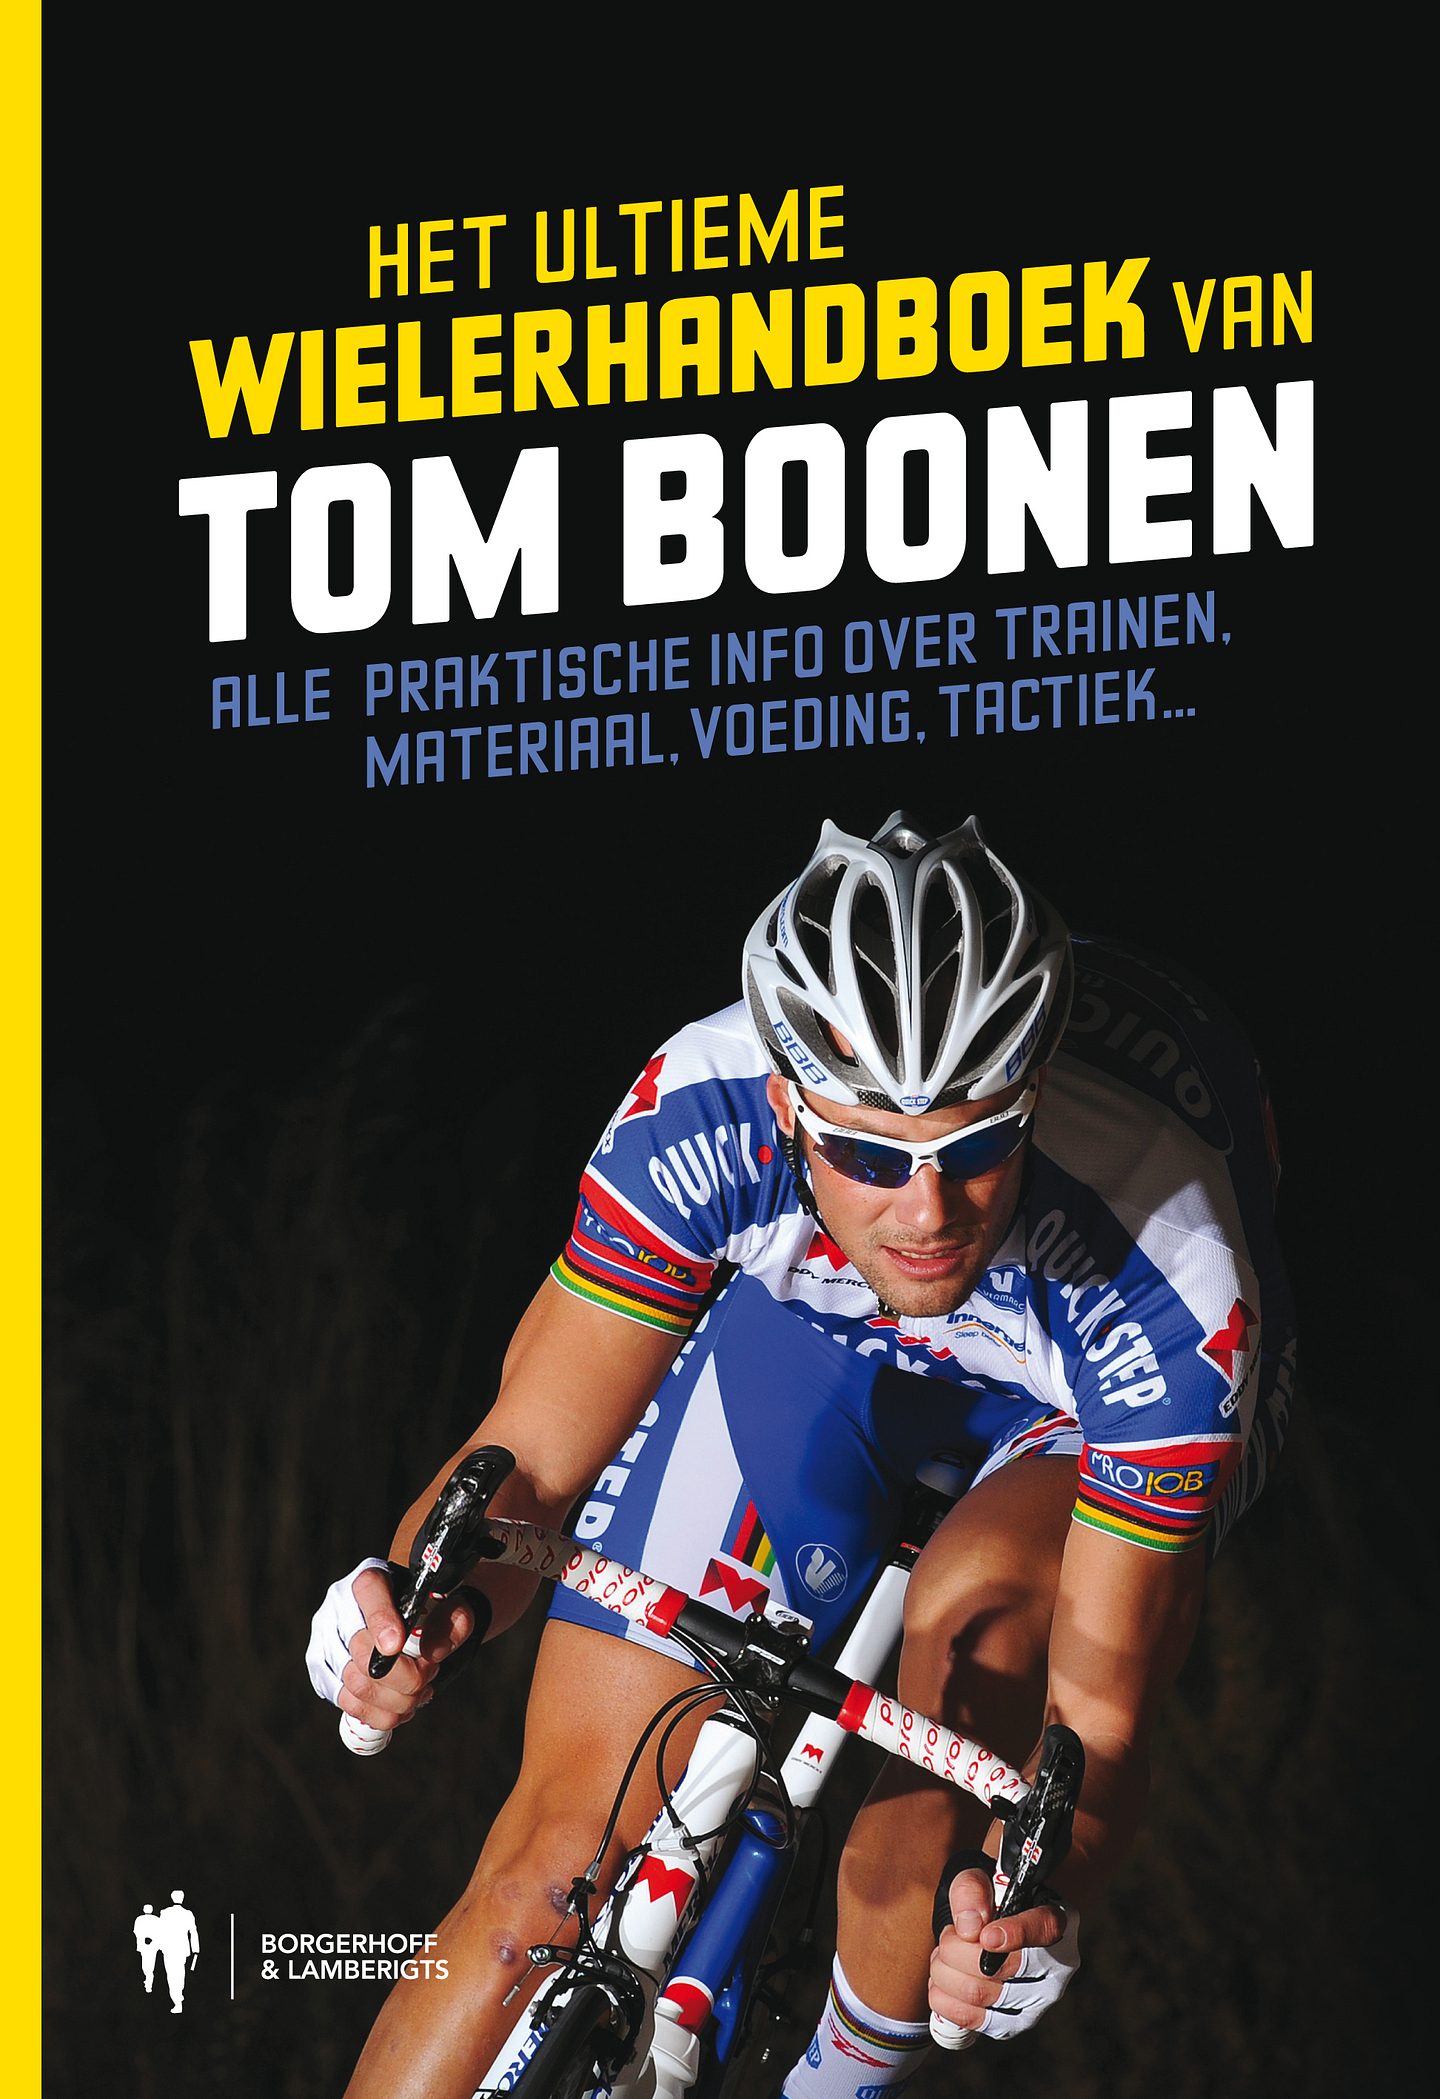 Hetultieme wielerhandboek Tom Boonen HR